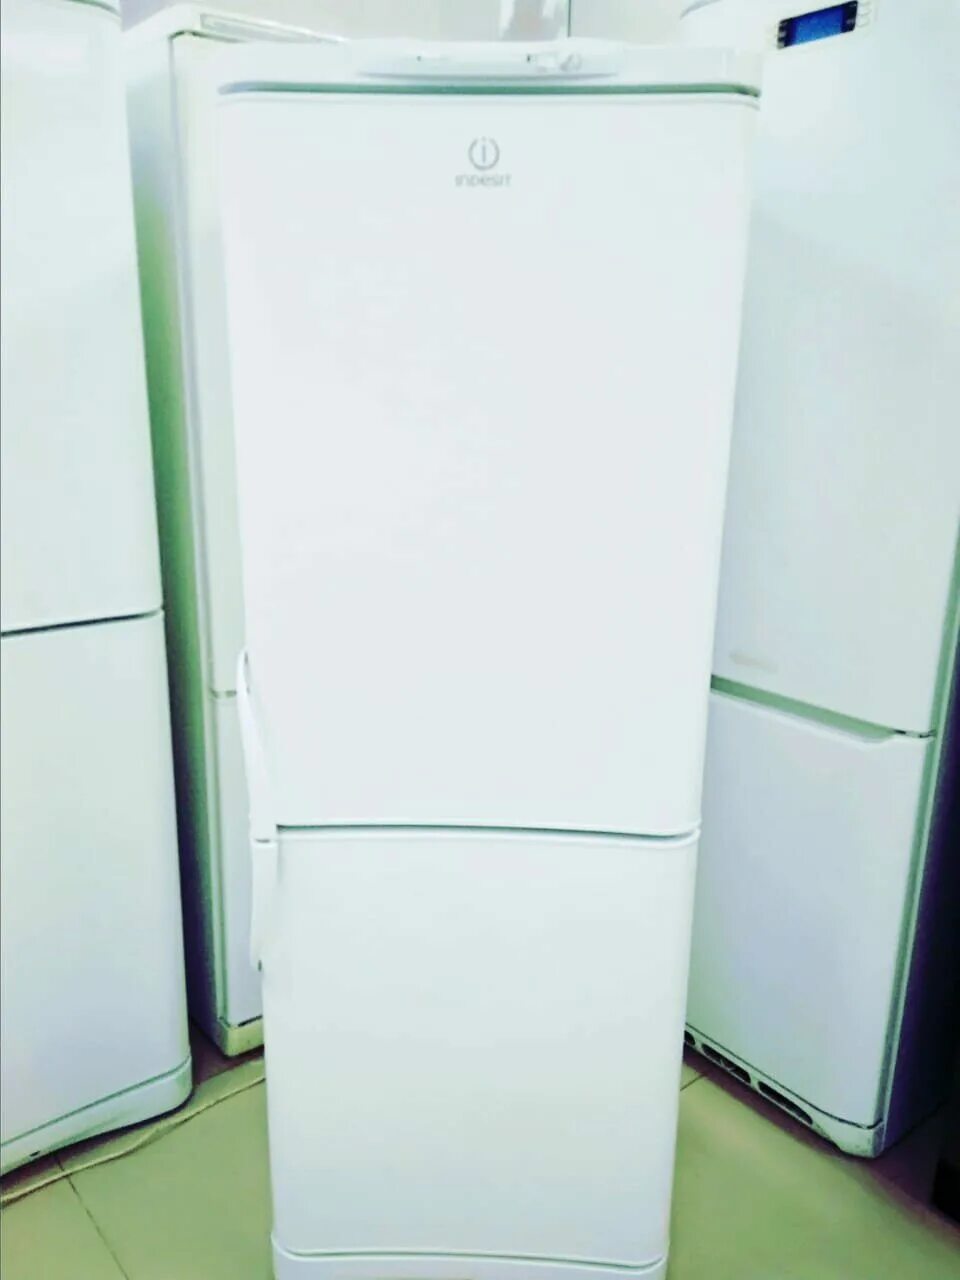 Холодильник Индезит с132g. Холодильник Индезит c132g.016. Индезит холодильники недорого